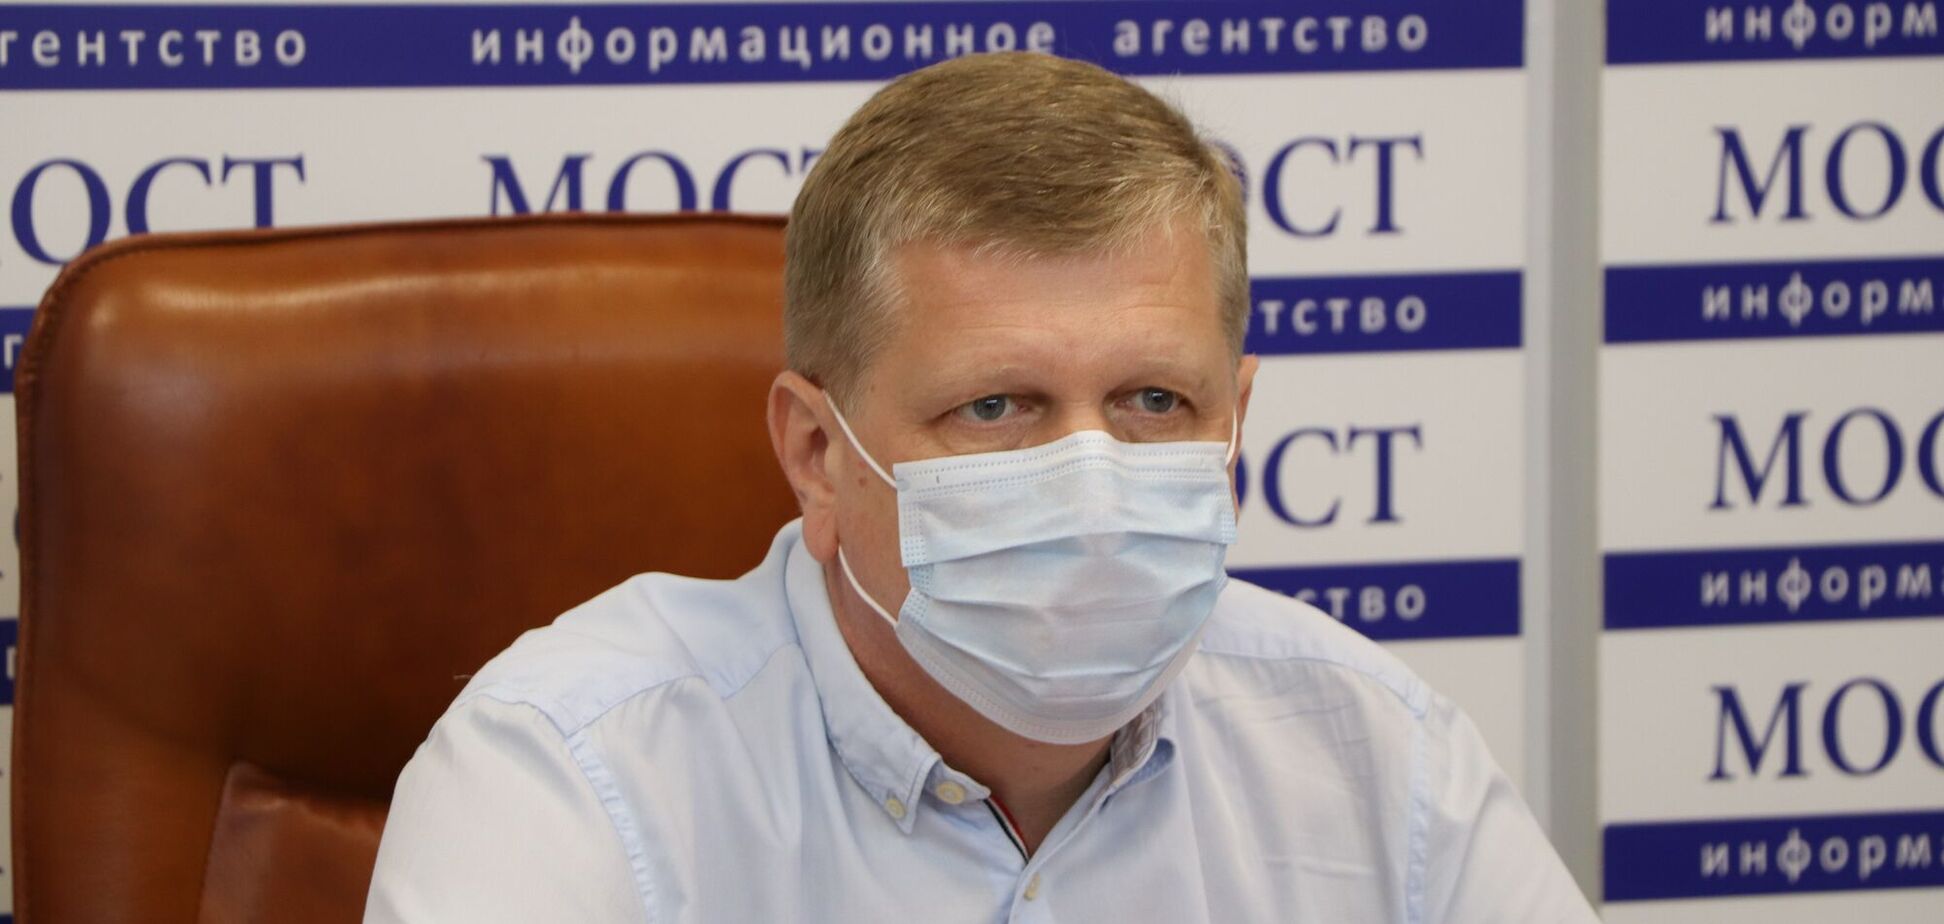 Заместитель городского головы, директор департамента охраны здоровья населения Днепровской городского совета Андрей Бабский